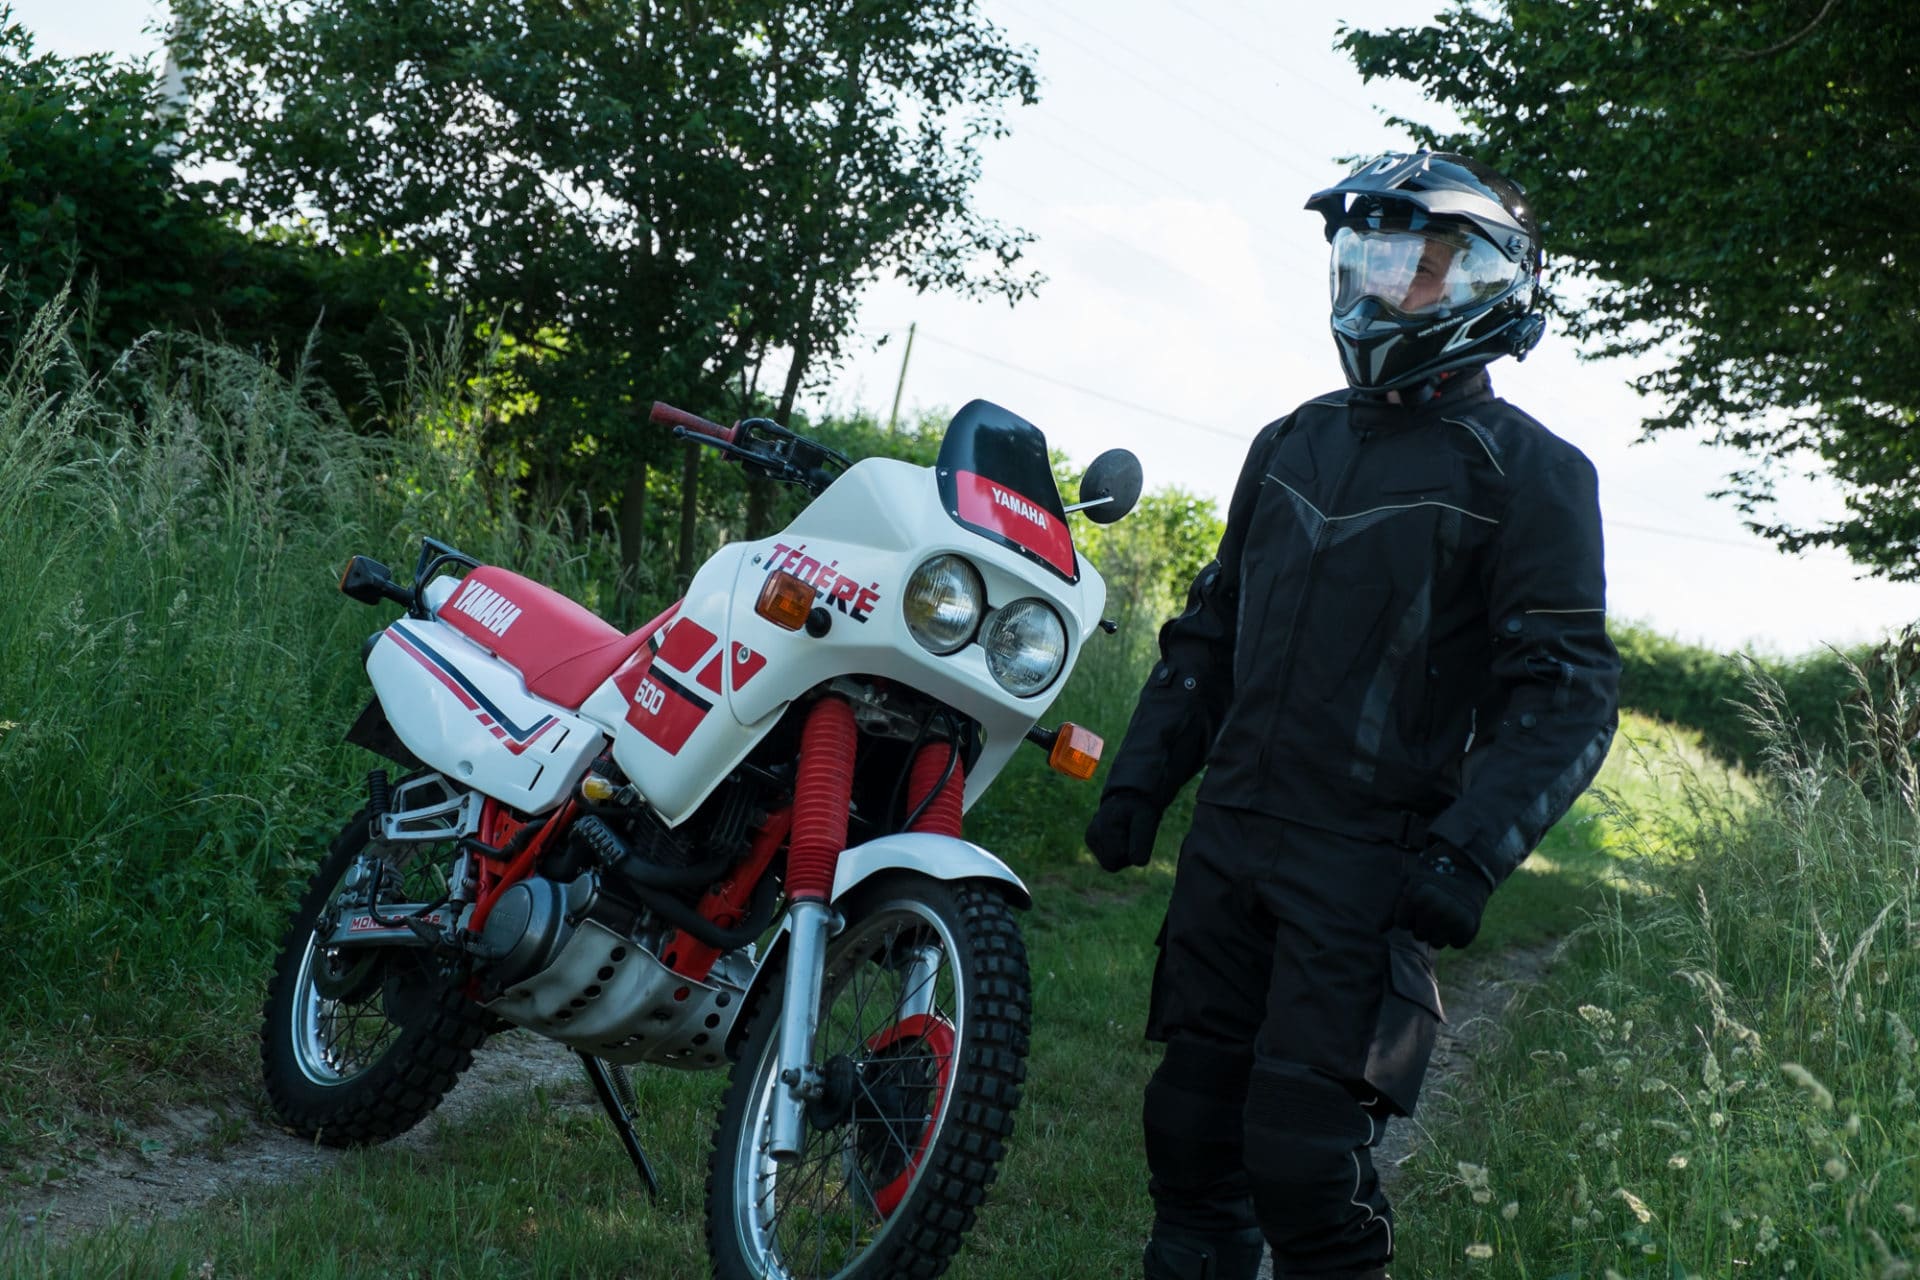 IXS pantalon de pluie moto scooter textile homme TOURING HERO EVO toutes  saisons étanche noir PROMO